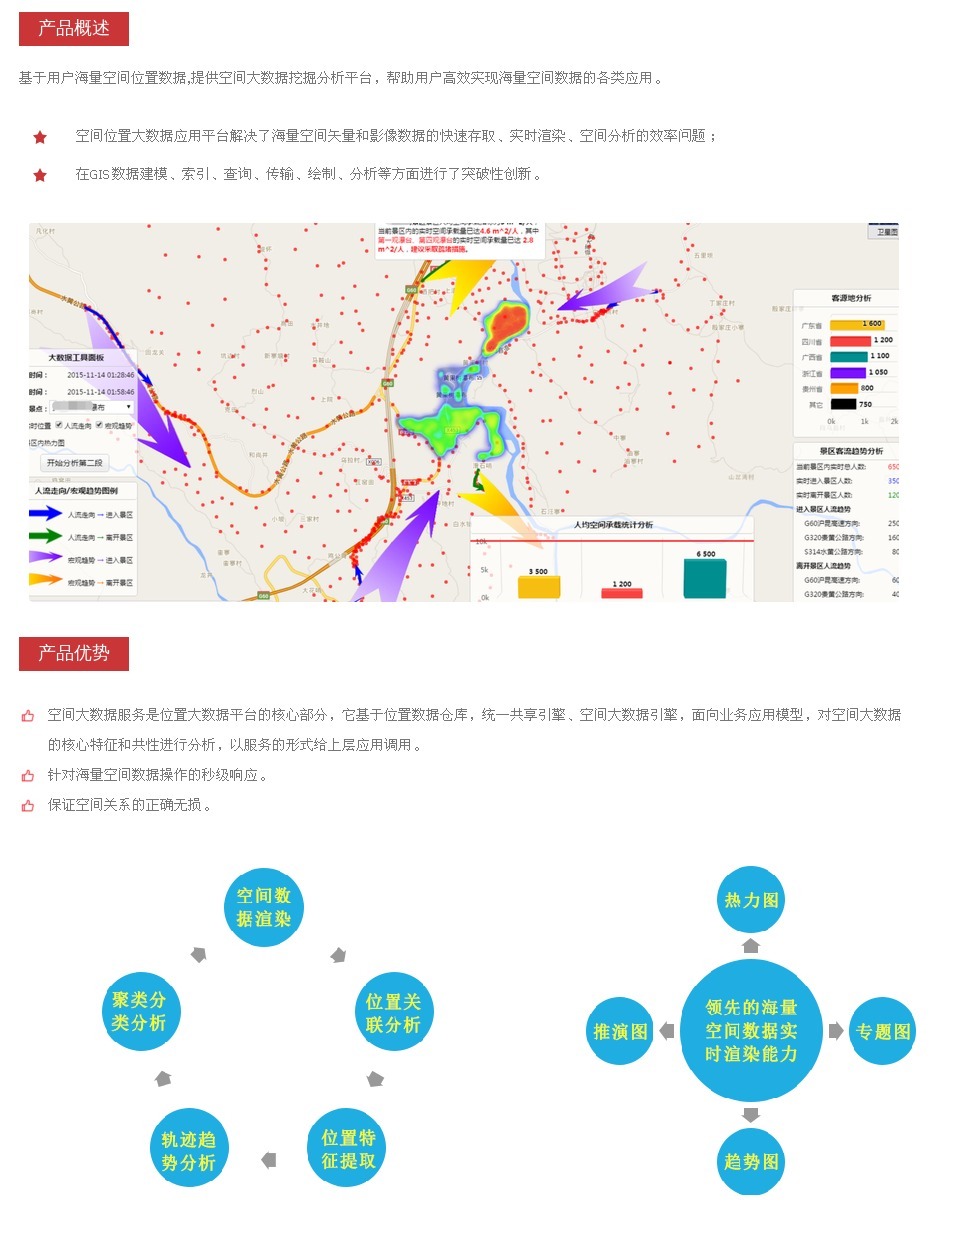 企服商城, 海量空间数据应用平台,sitemap赛图